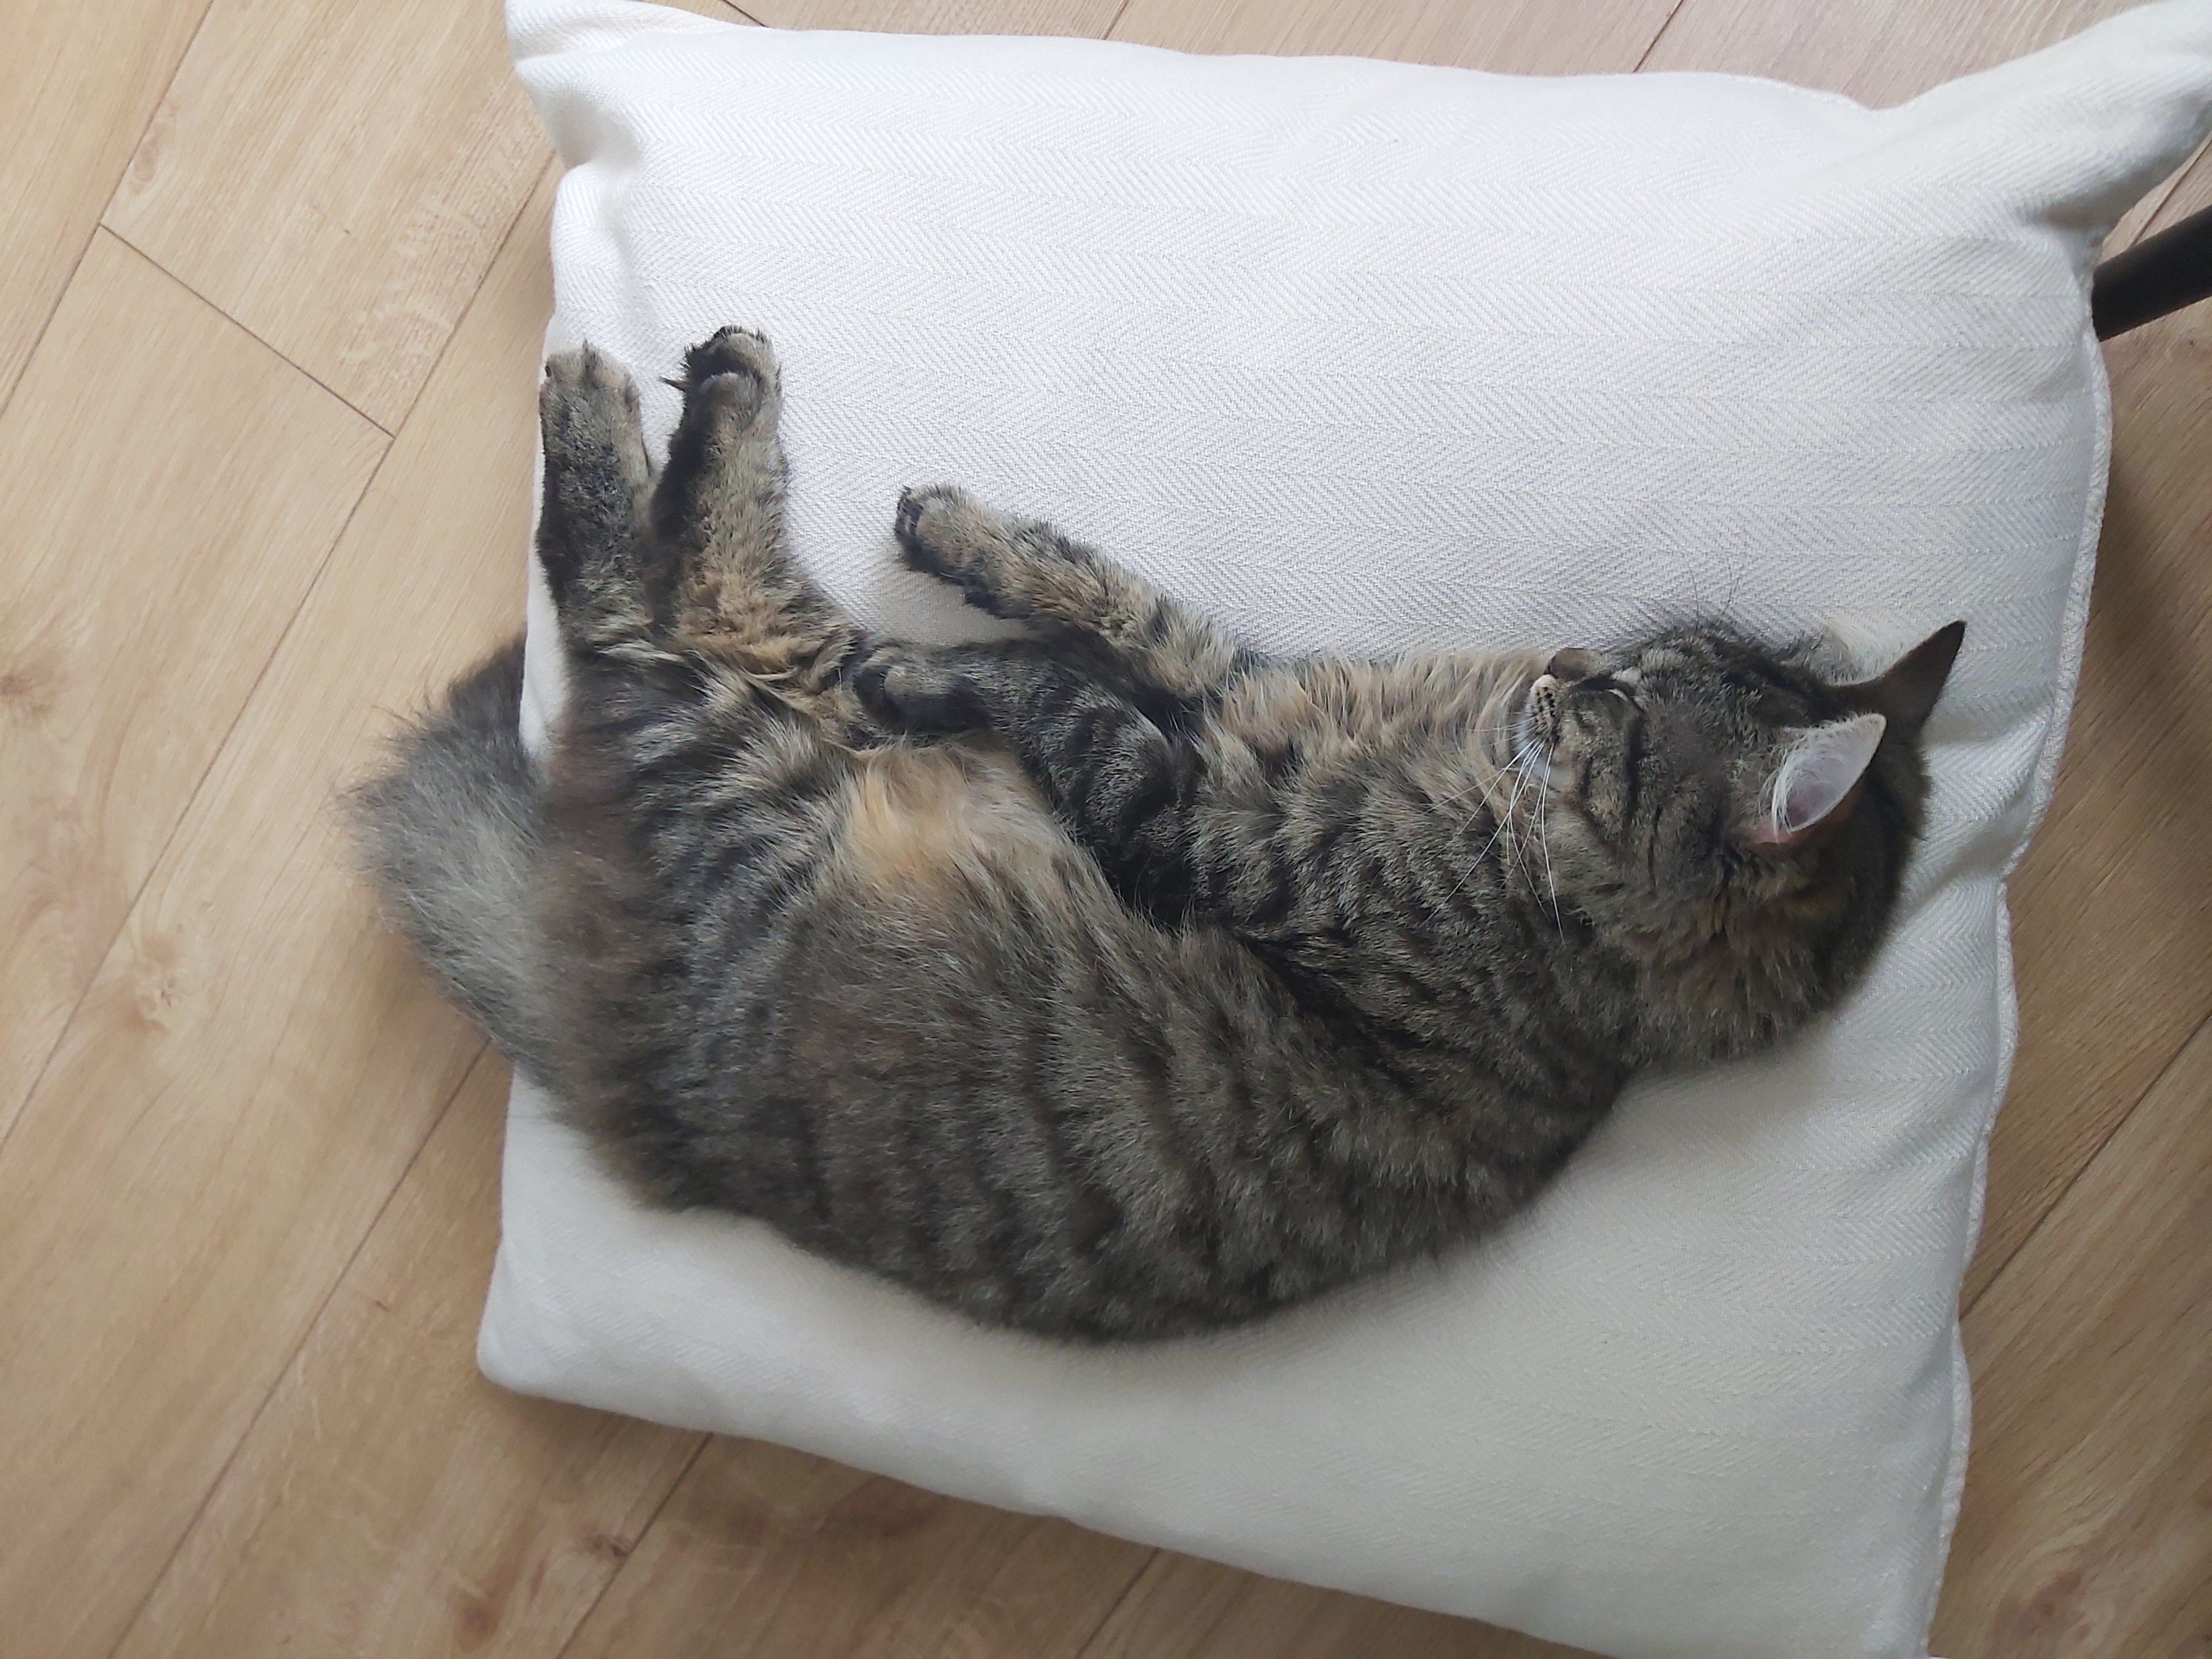 Monique sleeping on a cushion